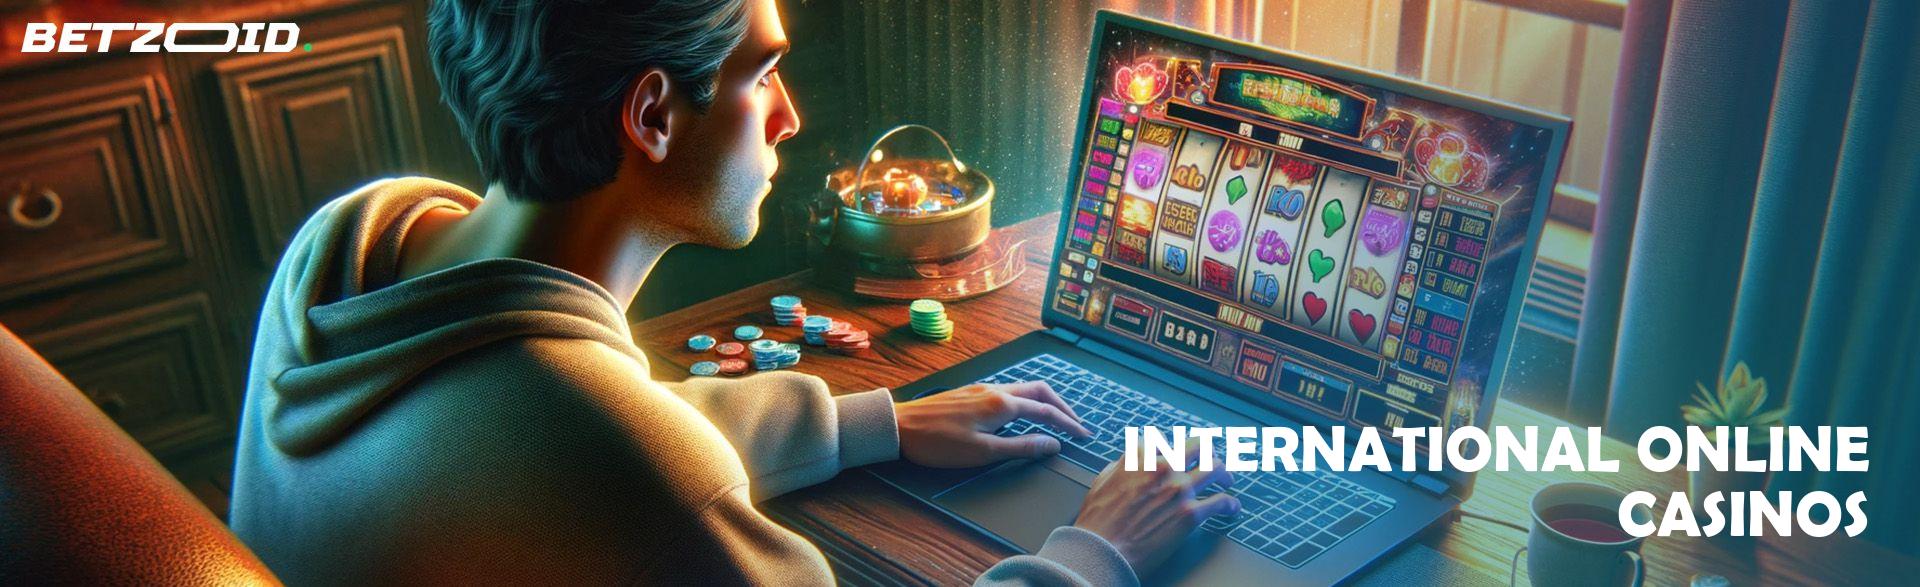 International Online Casinos.